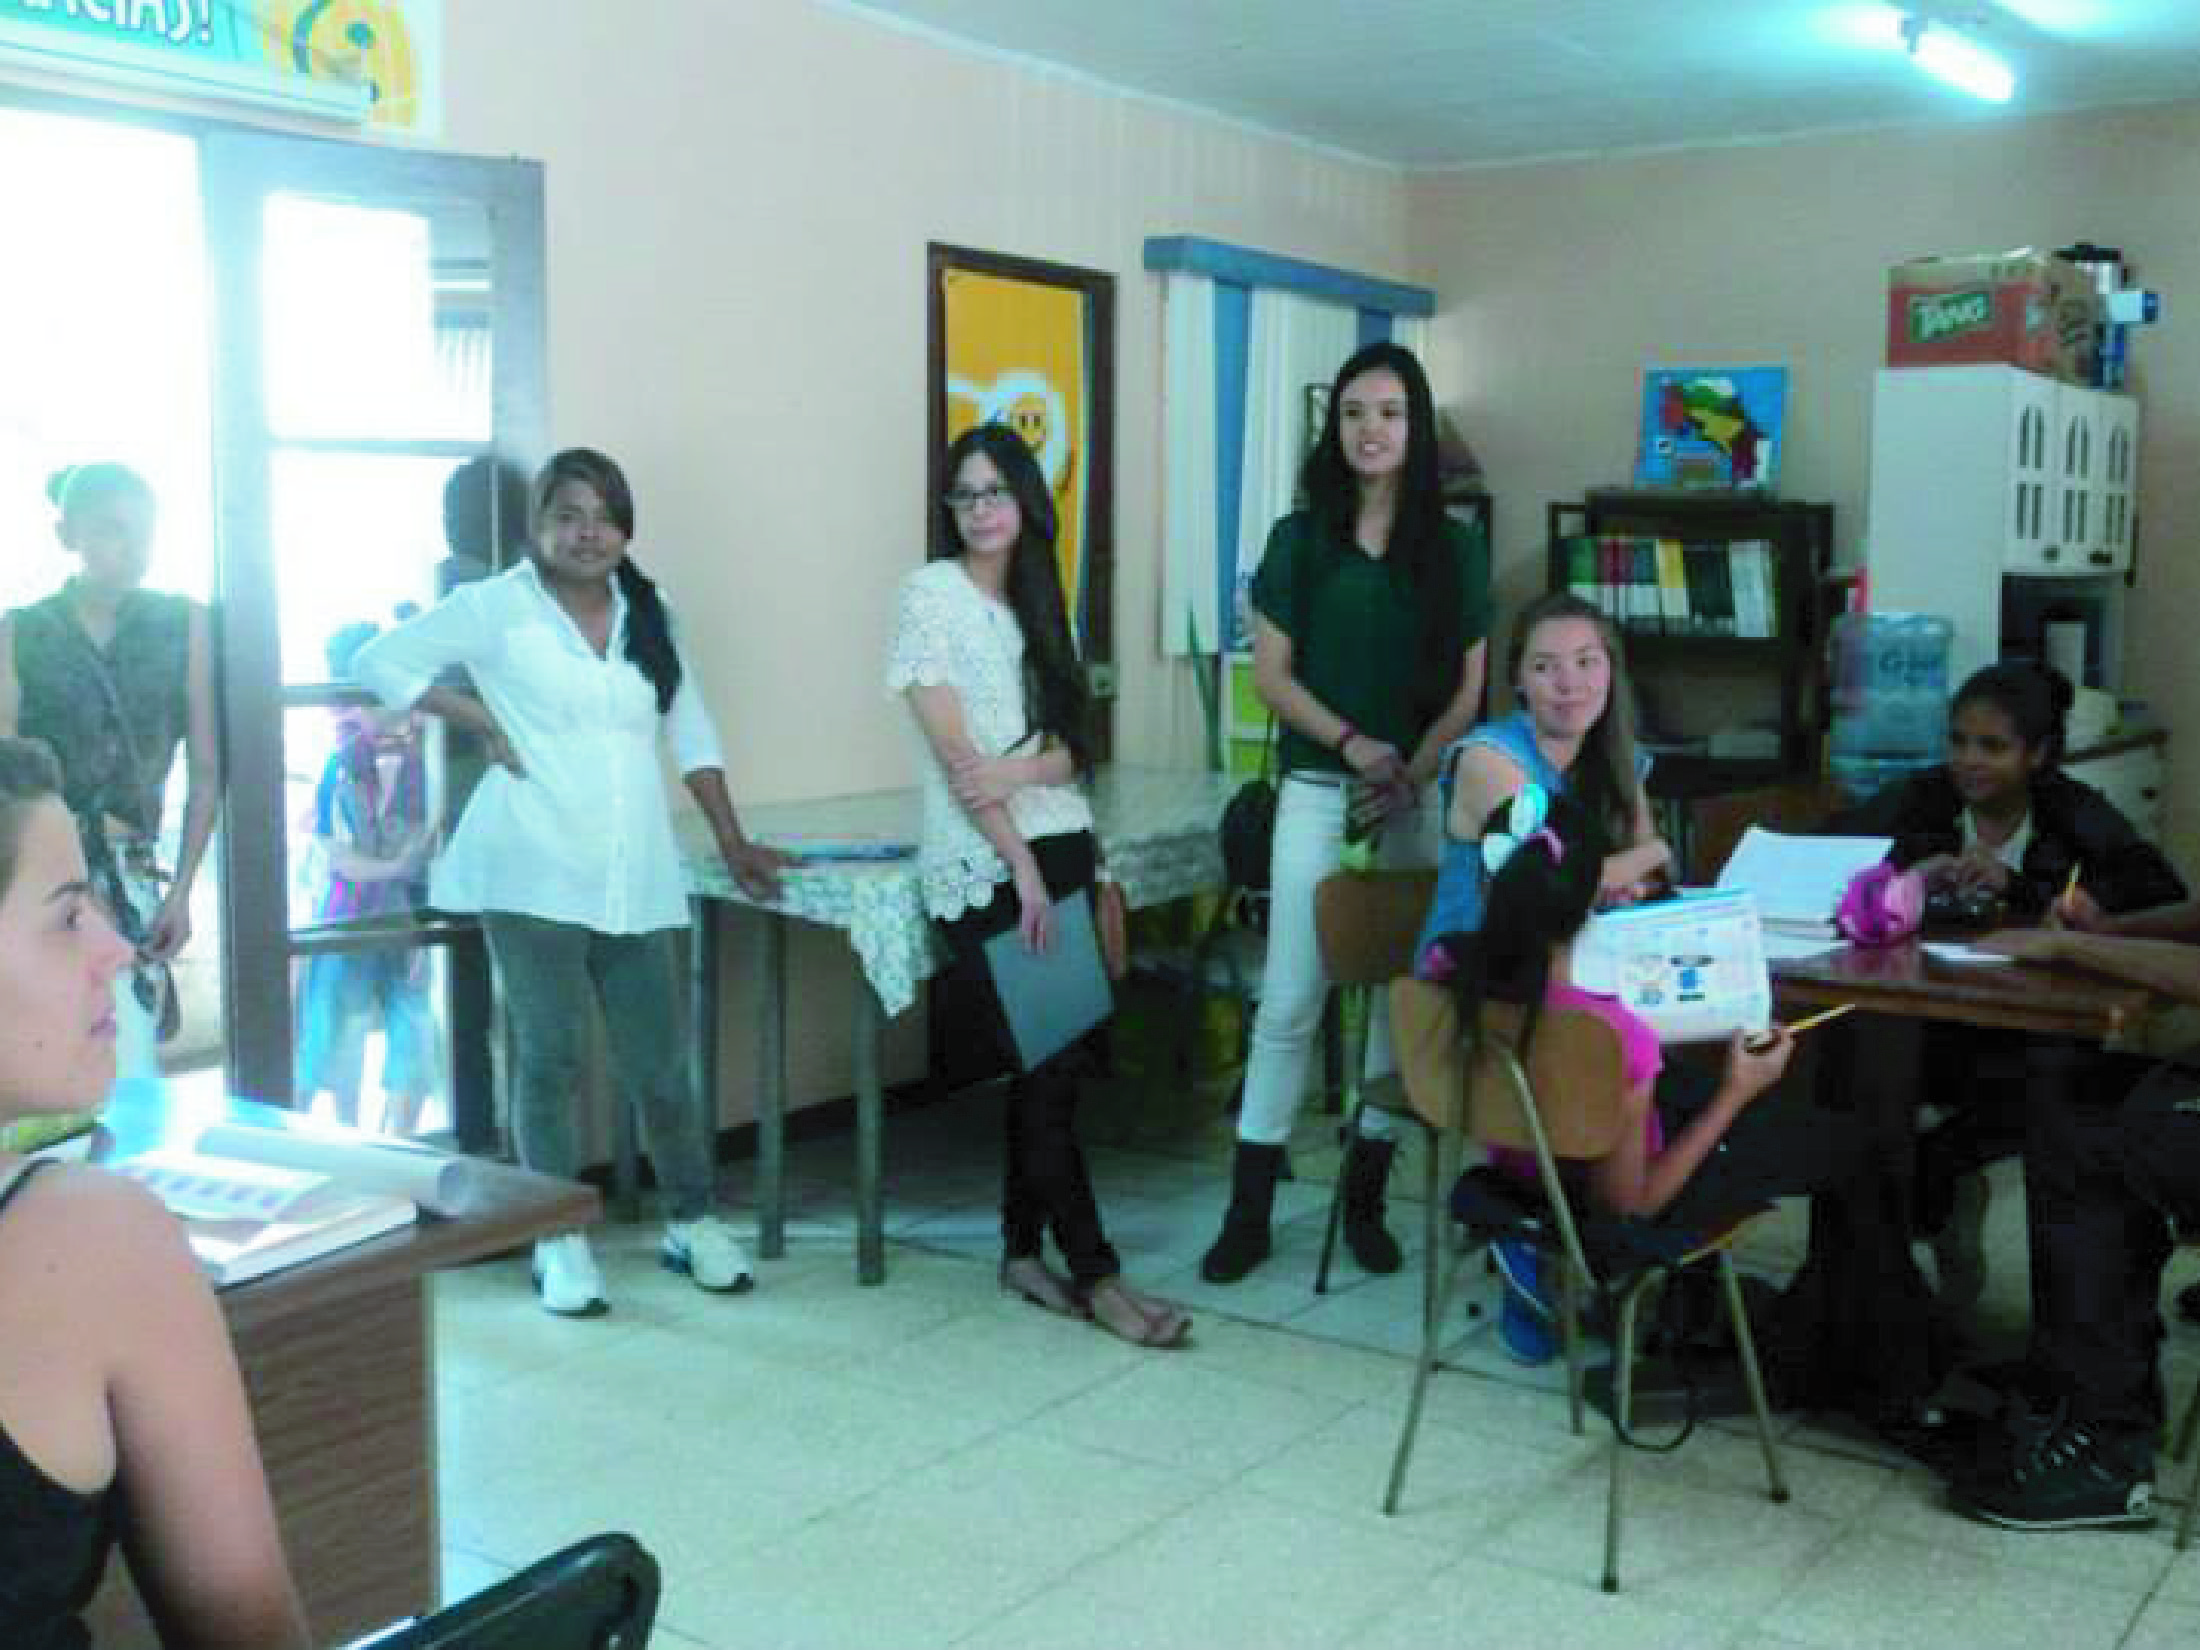 Voluntarios del TCU-568 “Promoción de una cultura de respeto y solidaridad en el contexto de las migraciones en Costa Rica” participan en las actividades de Merienda y Zapatos. (Foto Facebook Merienda y Zapatos)